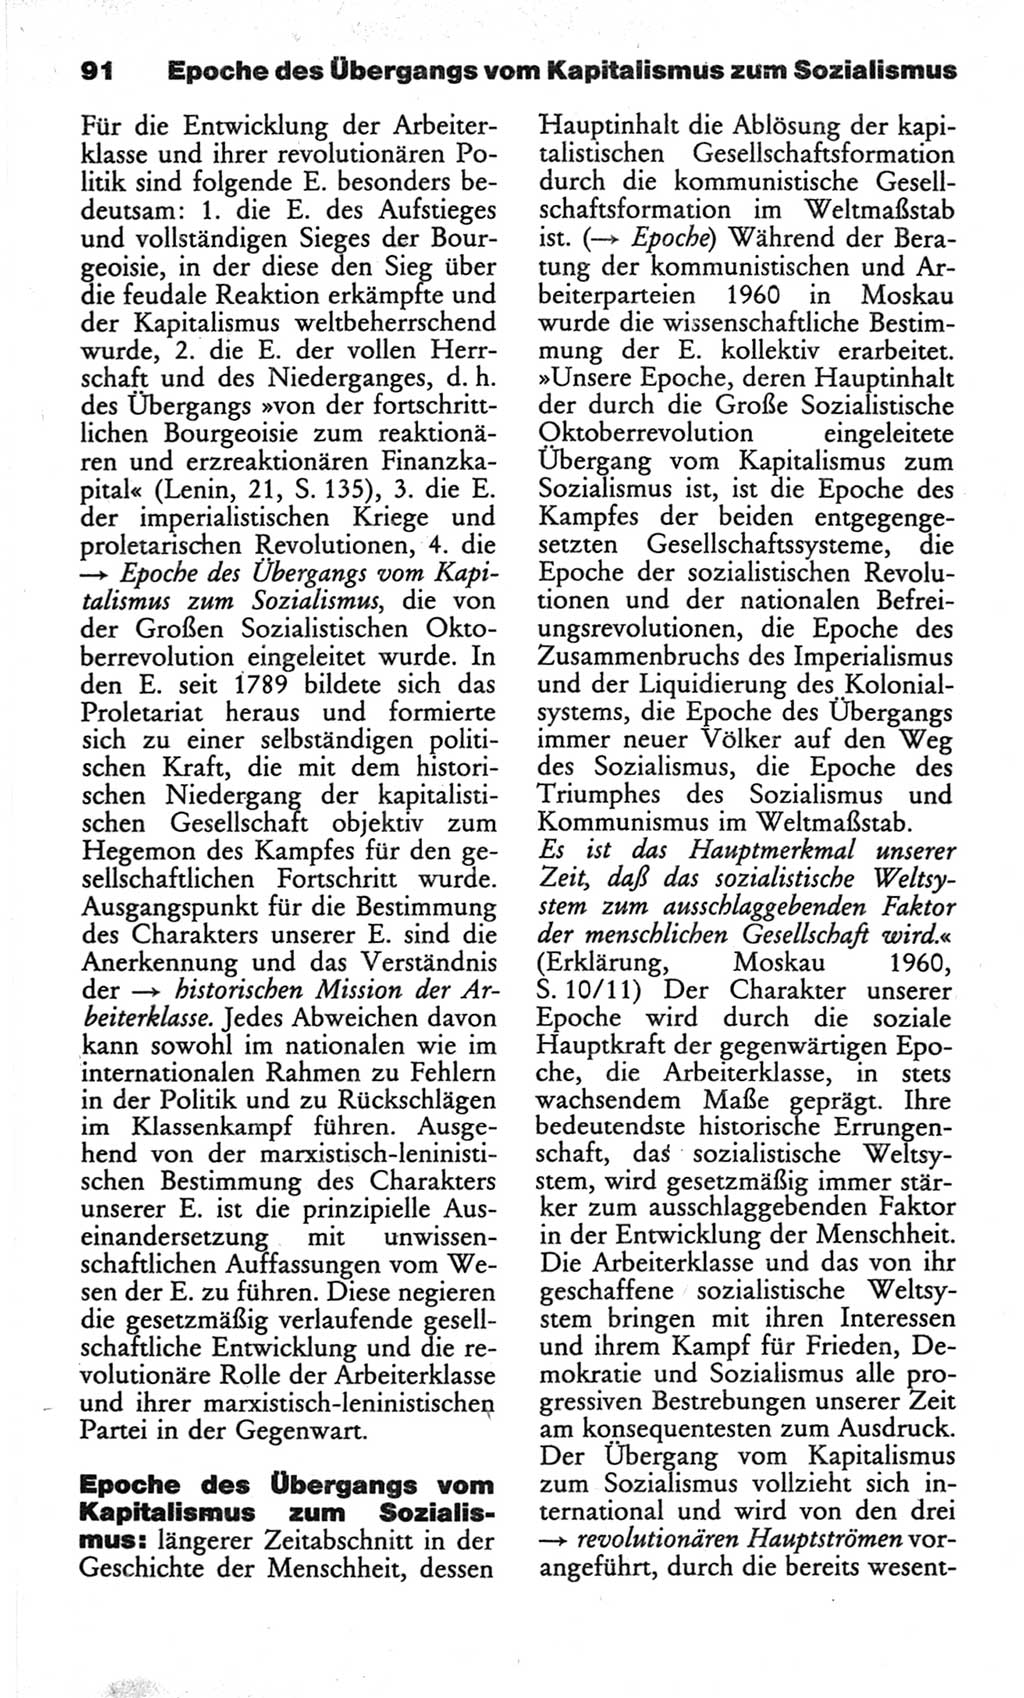 Wörterbuch des wissenschaftlichen Kommunismus [Deutsche Demokratische Republik (DDR)] 1982, Seite 91 (Wb. wiss. Komm. DDR 1982, S. 91)